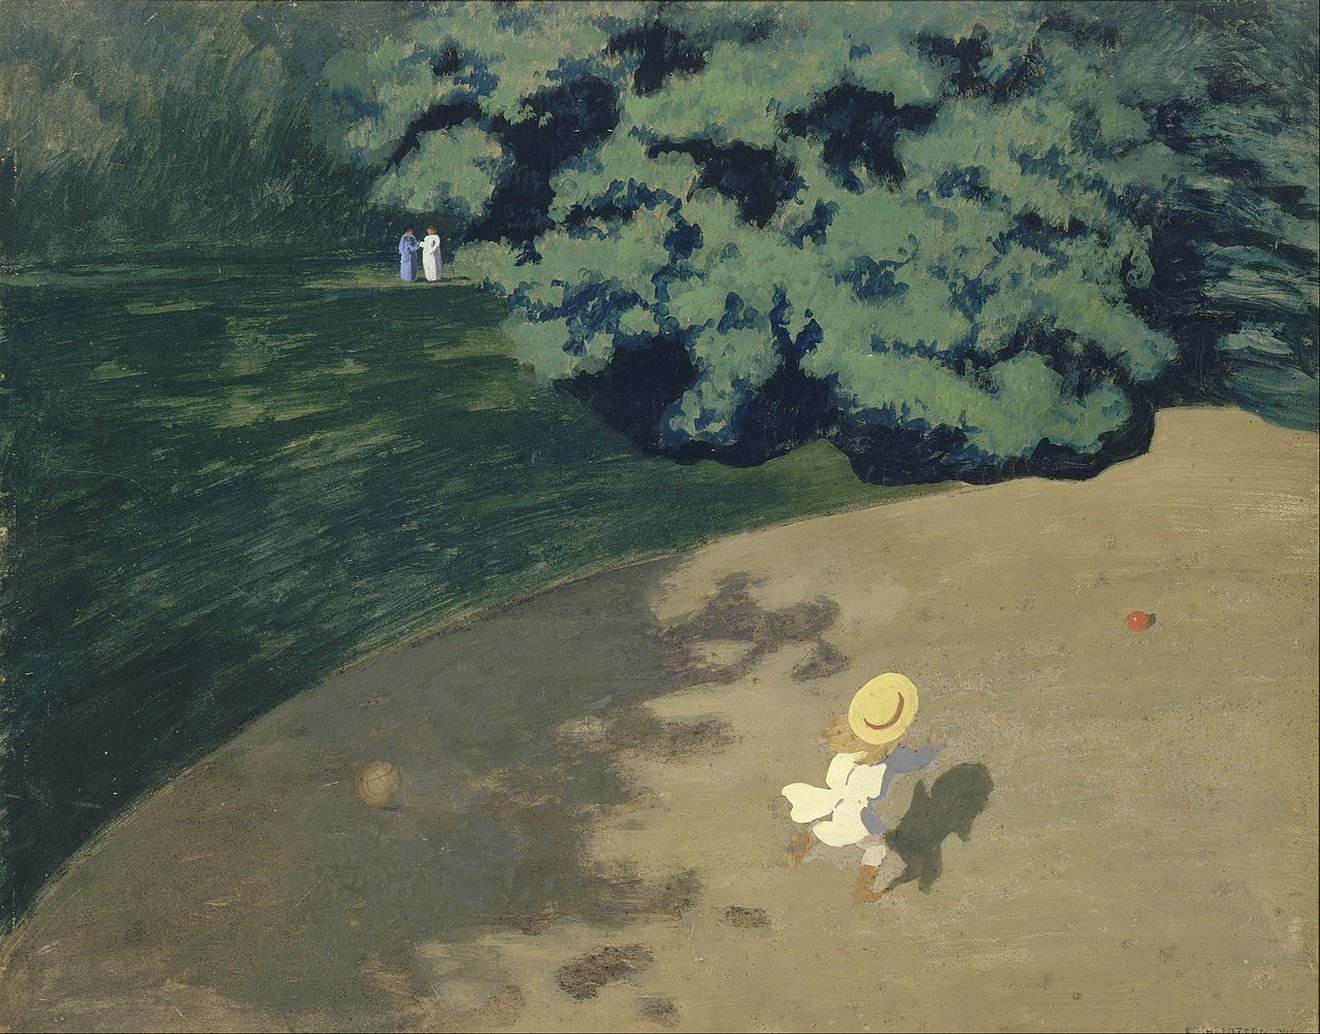 Le Ballon, huile sur toile, 1899, Félix Vallotton